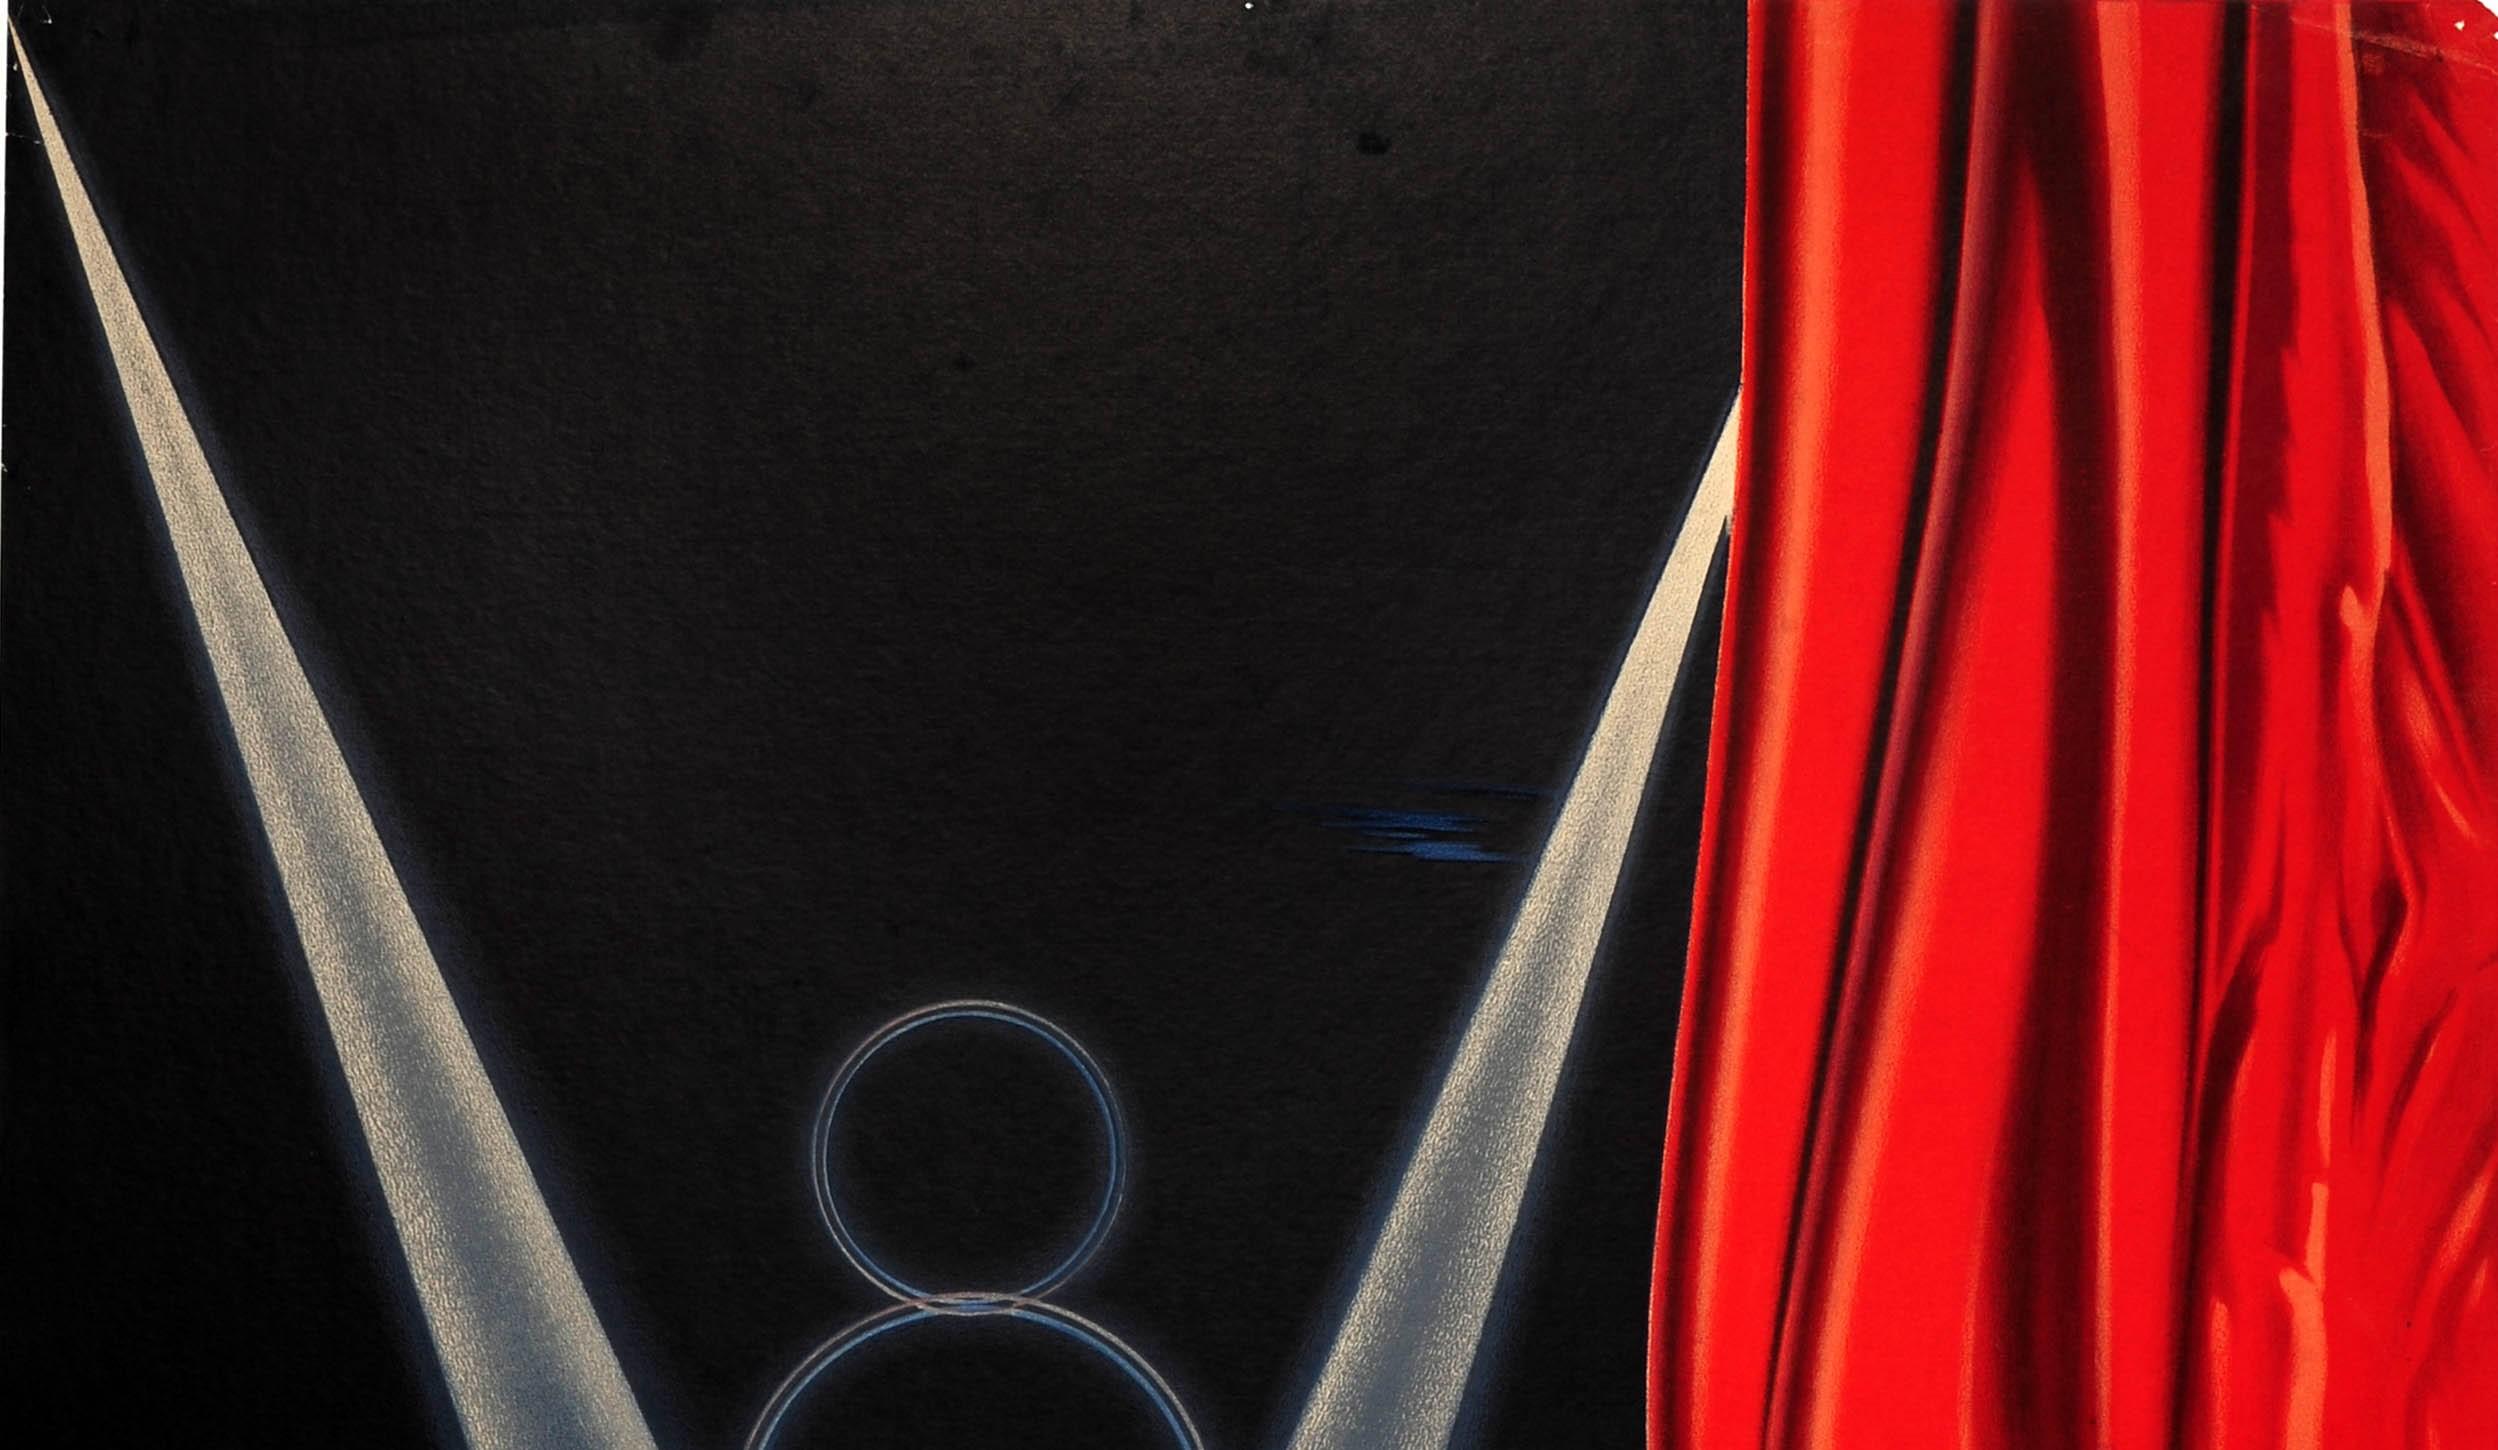 Affiche publicitaire originale pour Matford V8 Une Nouvelle Vedette sur la Scène du Monde / A New Star on the World Stage présentant un dessin fantastique montrant une nouvelle voiture classique Matford V8 bleue brillante exposée au sommet de la